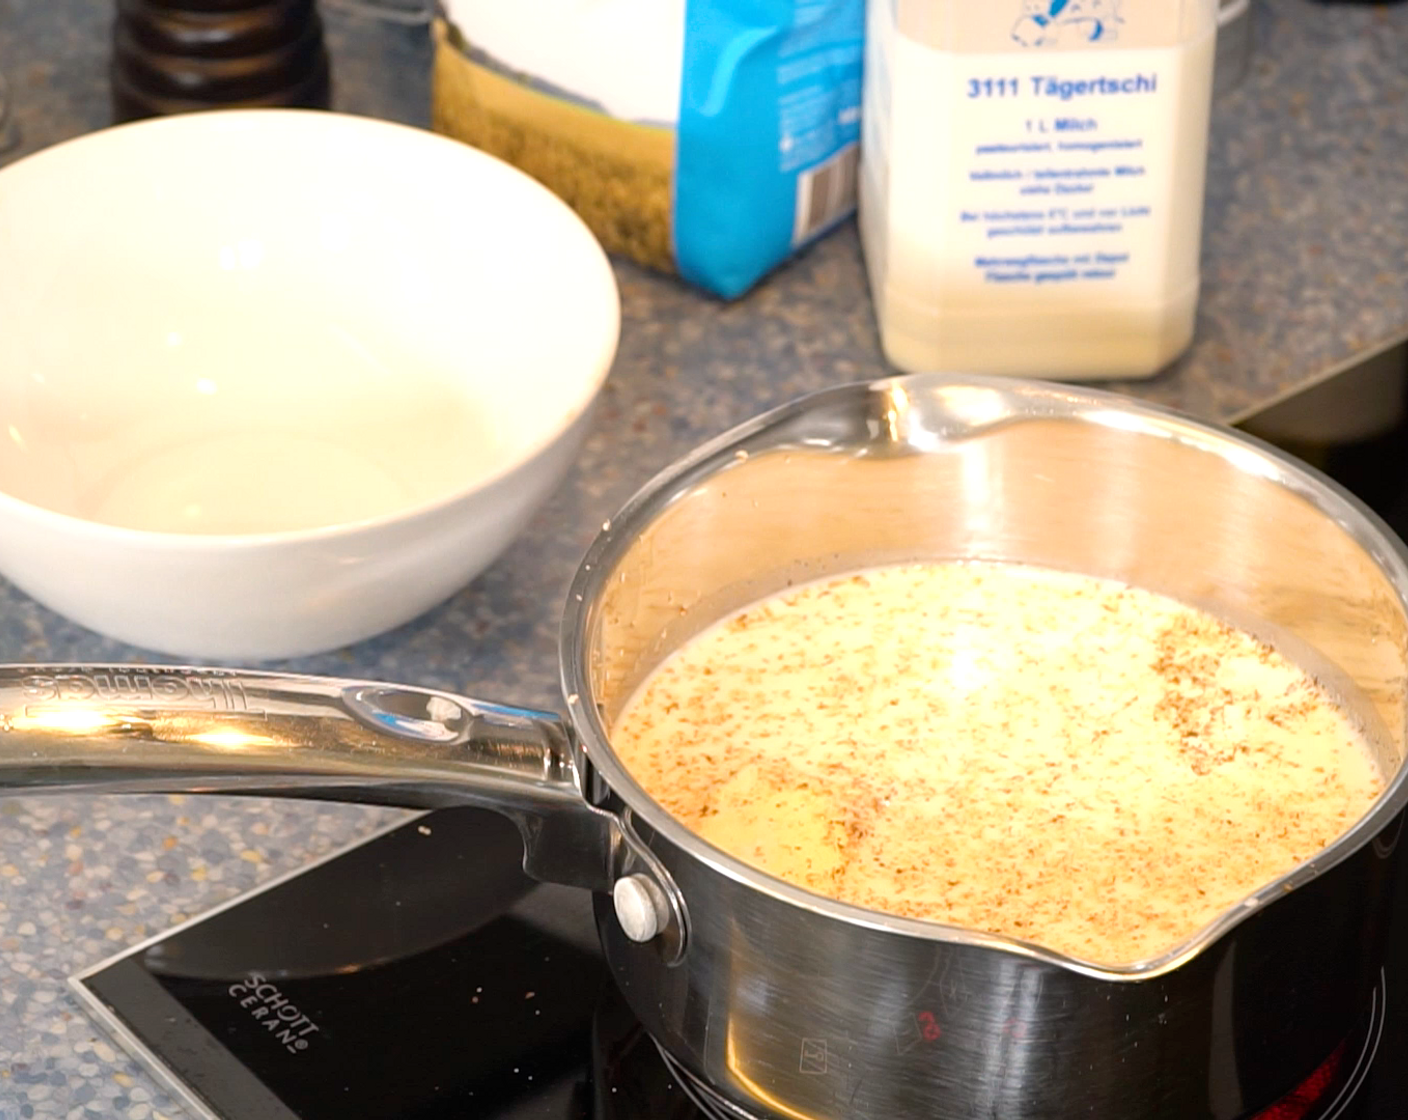 Schritt 2 Béchamelsauce: In einer Pfanne Milch (600 ml) und Butter (2 Esslöffel) aufkochen, mit Salz (wenig), Pfeffer (wenig) und Muskat (wenig) würzen. Mehl (2 Esslöffel) mit Milch (100 ml) in einer Schüssel anrühren. Die Mehl-Milch-Mischung unter ständigem Rühren der leicht köchelnden Milch beifügen. 2 Minuten köcheln lassen.